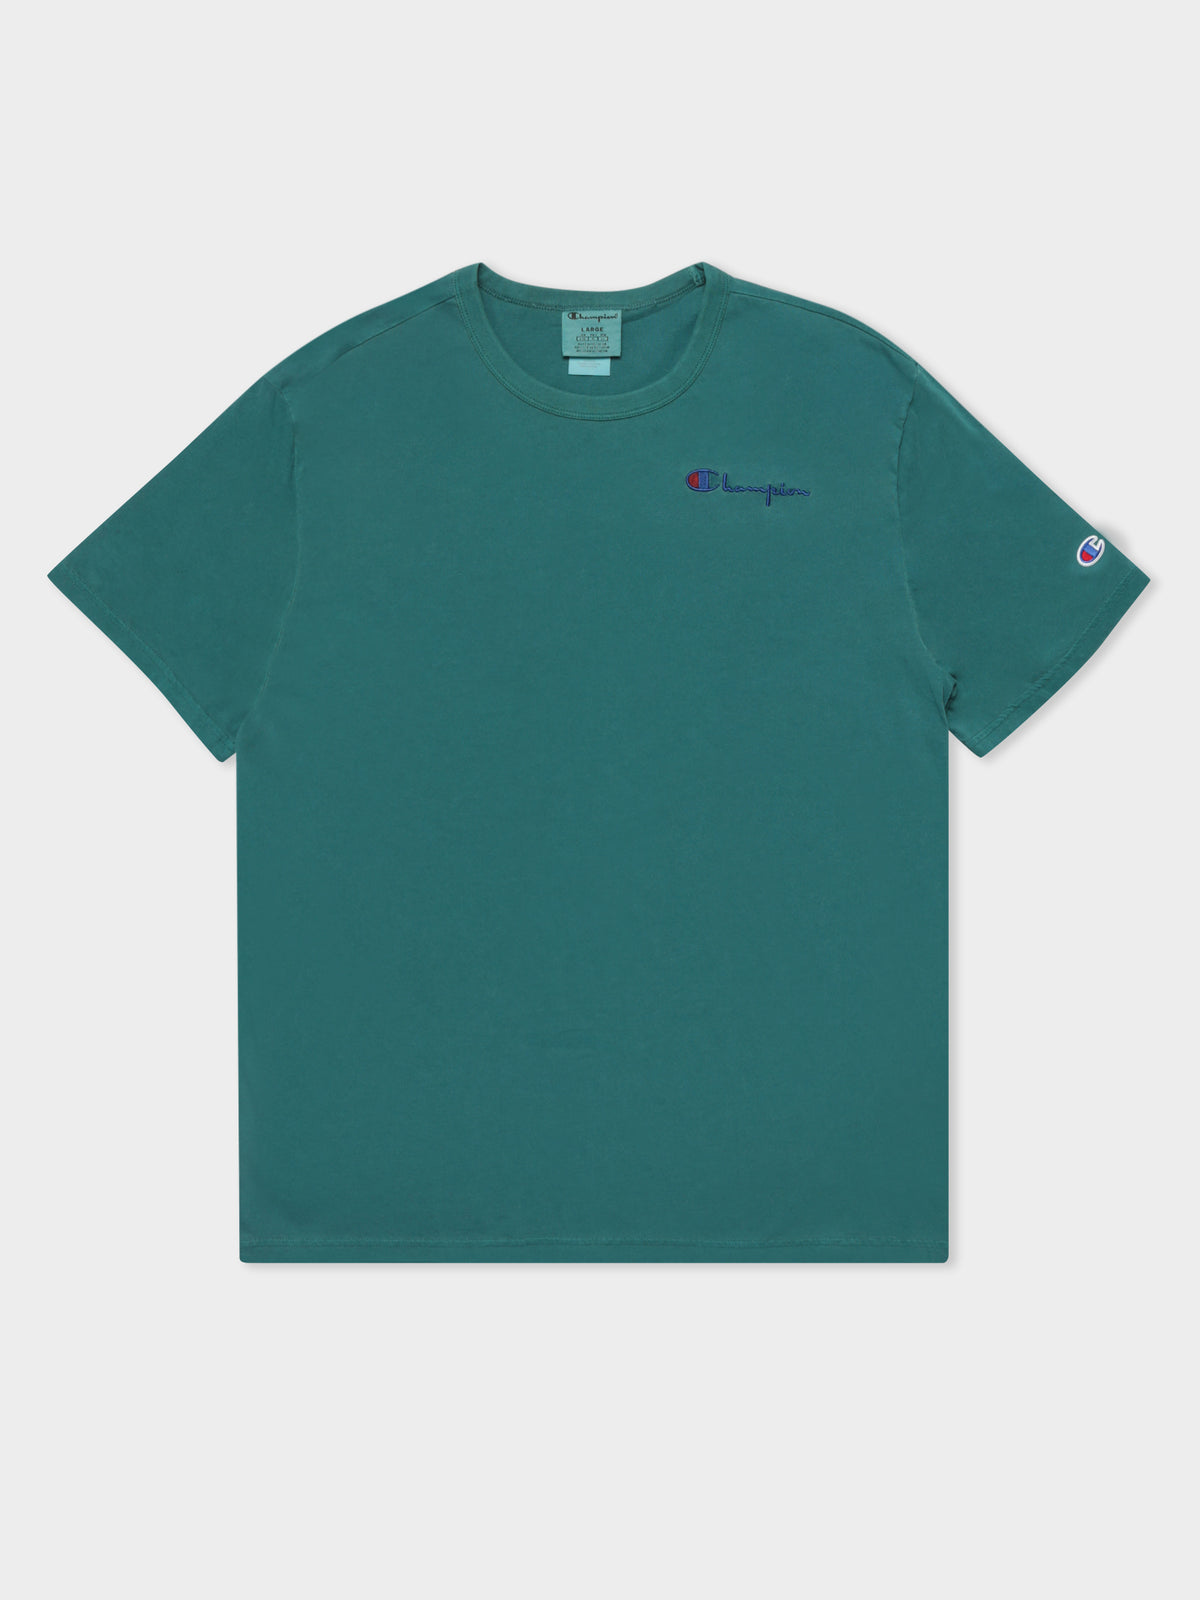 Vintage Dye T-Shirt in Gem Jade